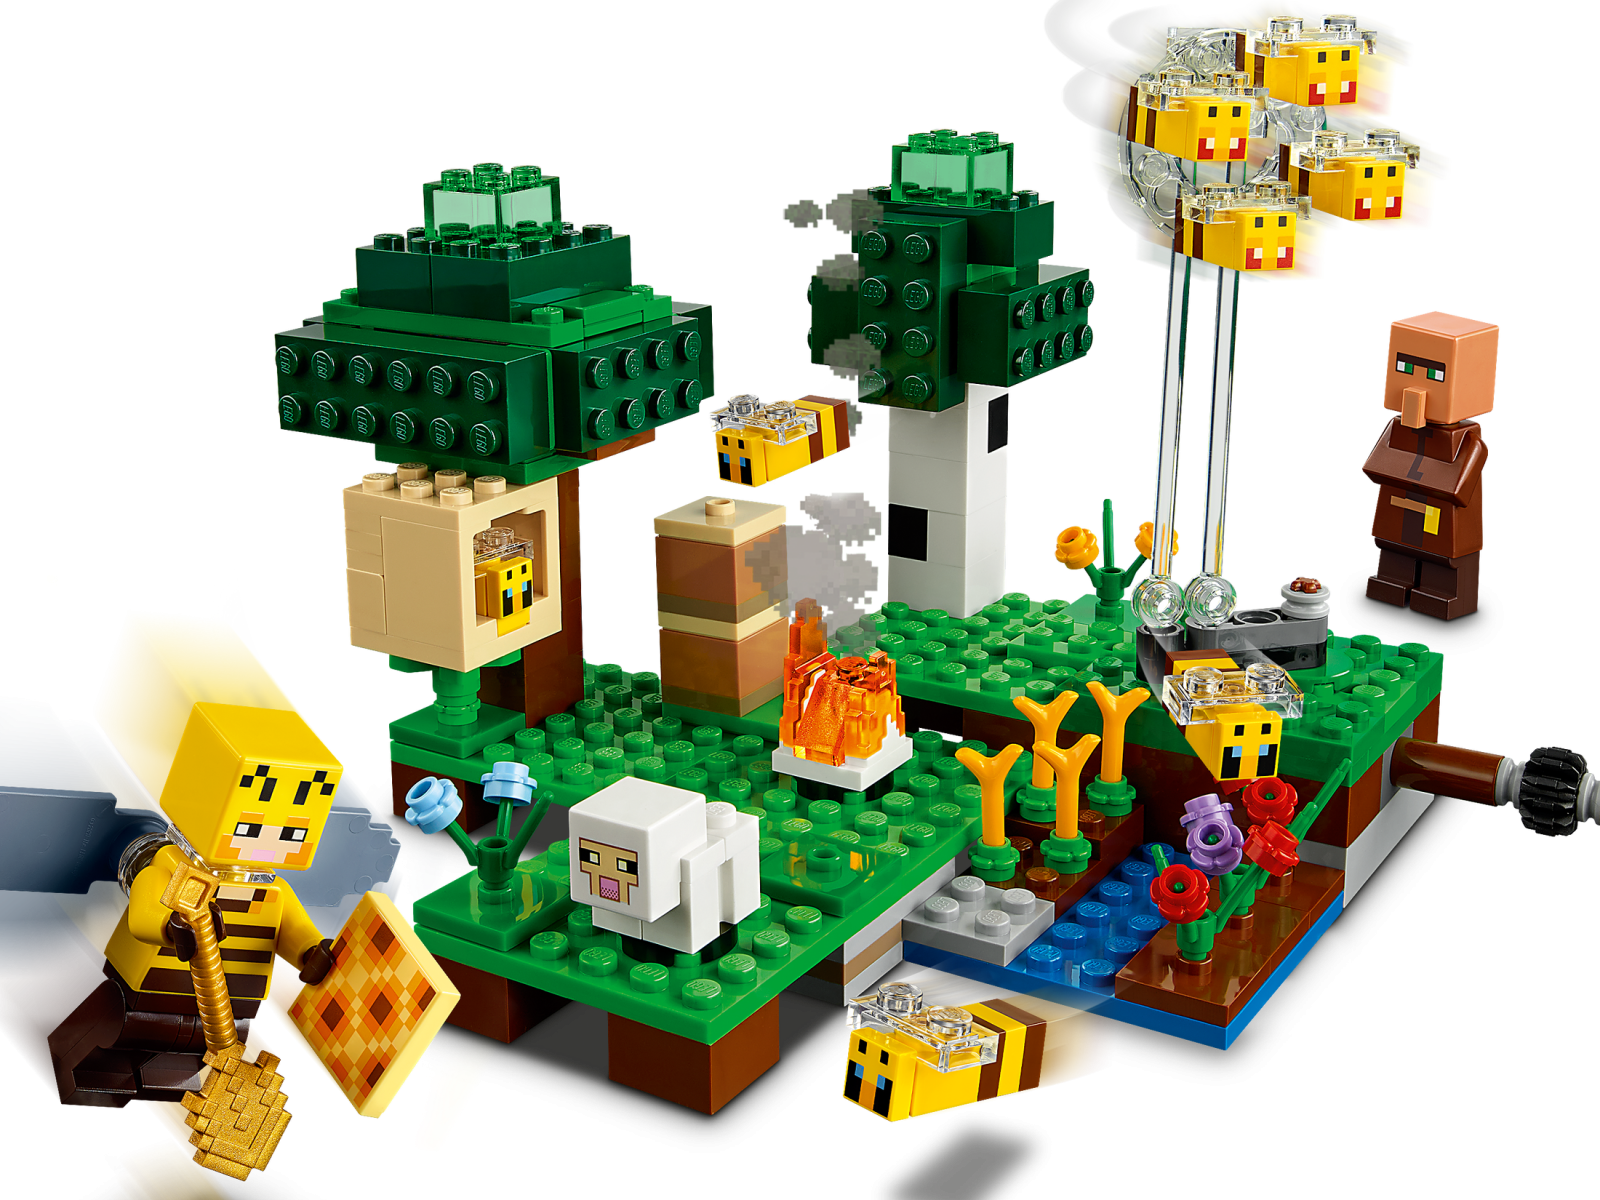 LEGO 21165 The Bee Farm â Minecraft â BrickBuilder Australia LEGO SHOP